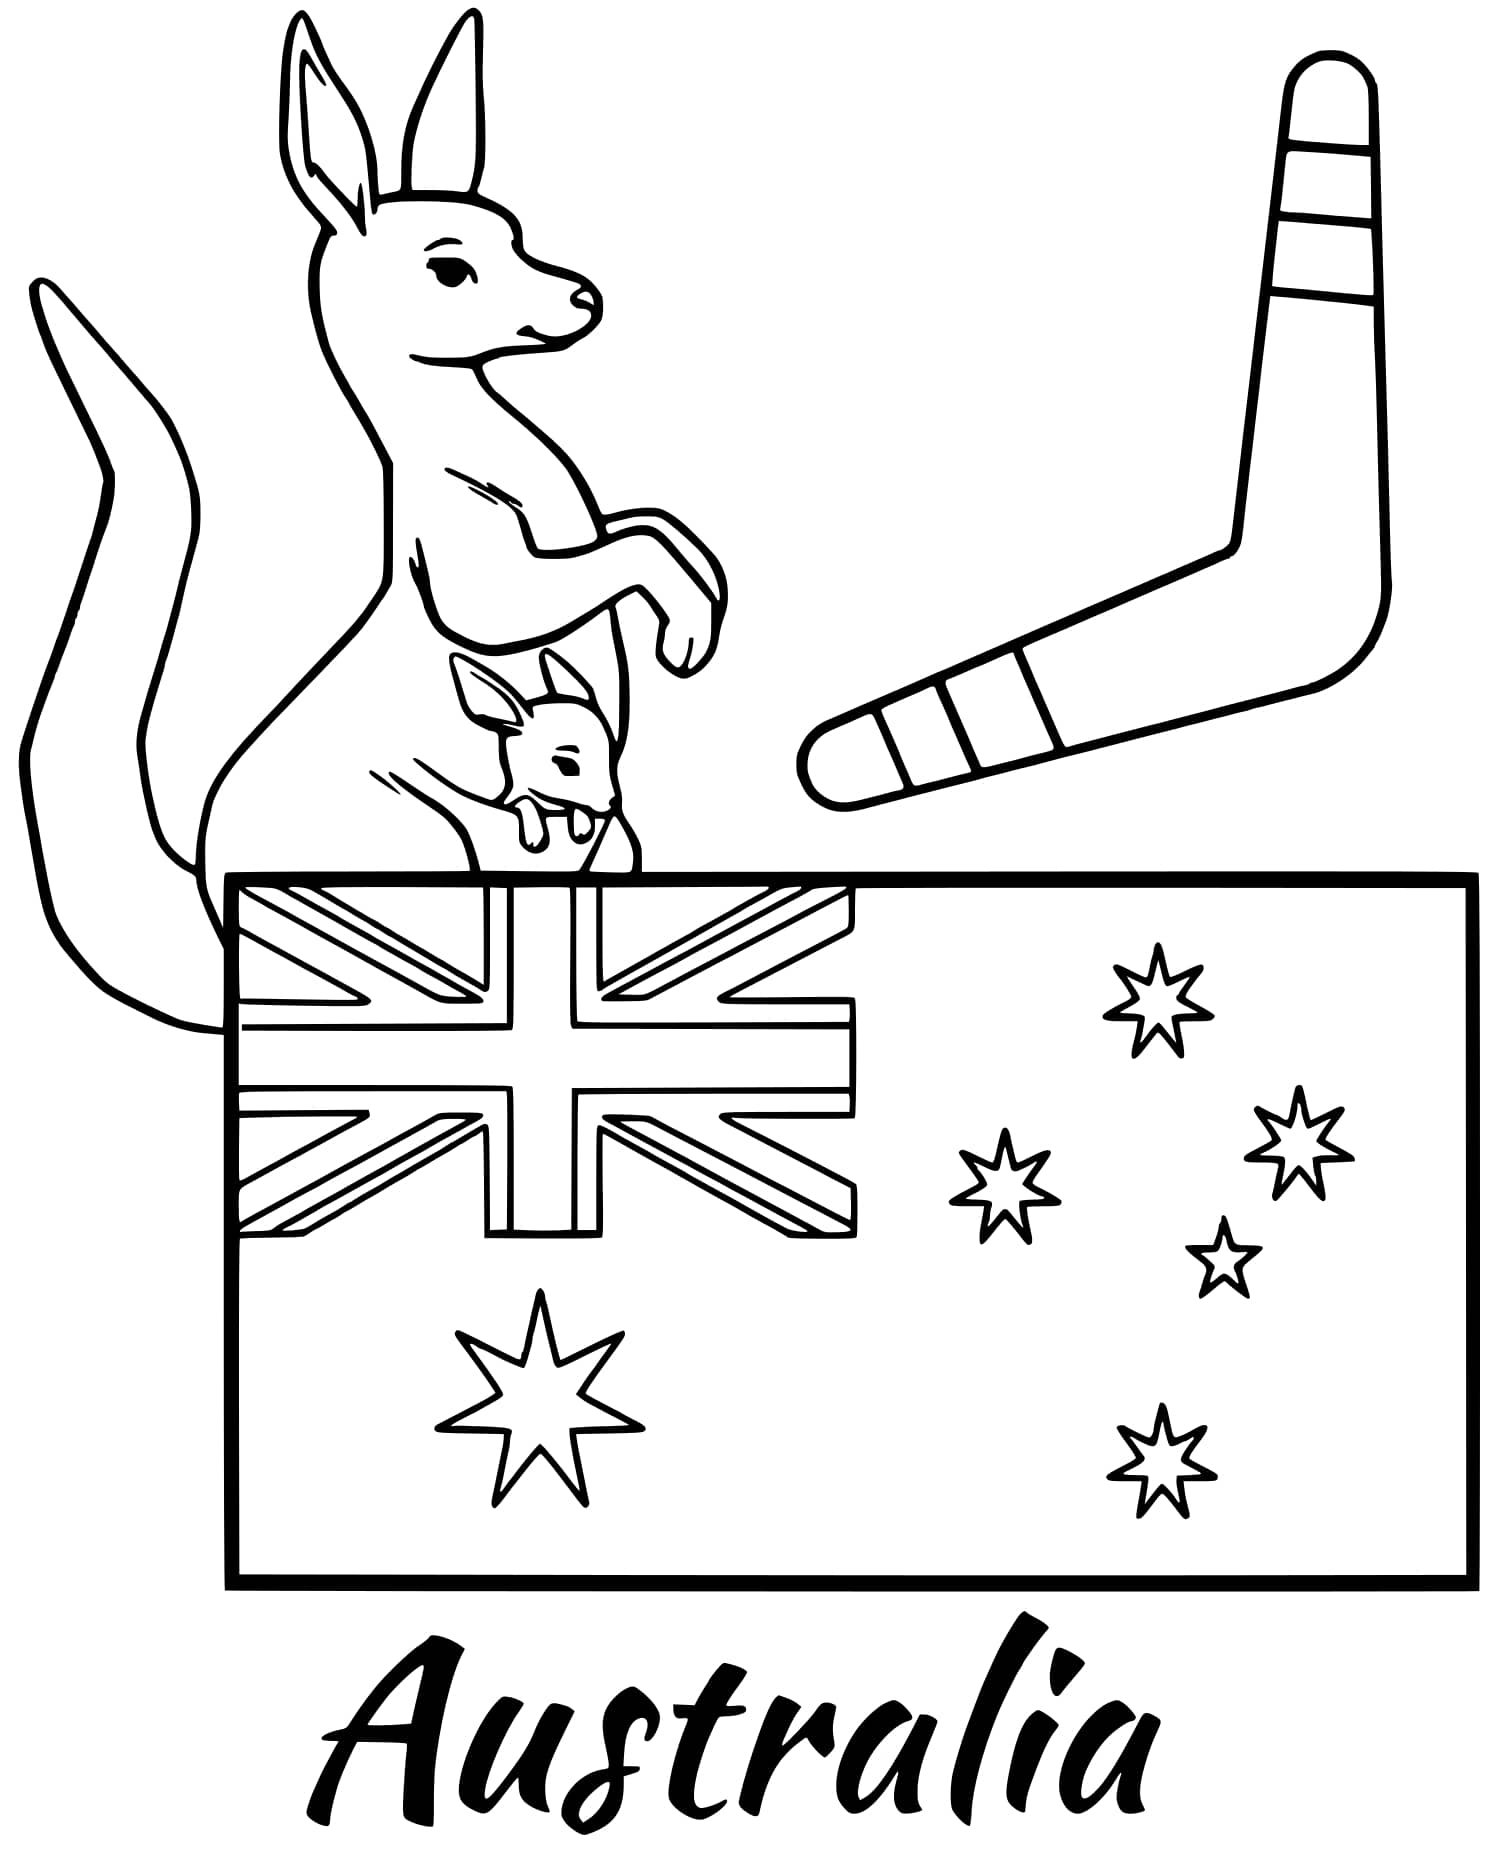 Австралия раскраска для детей